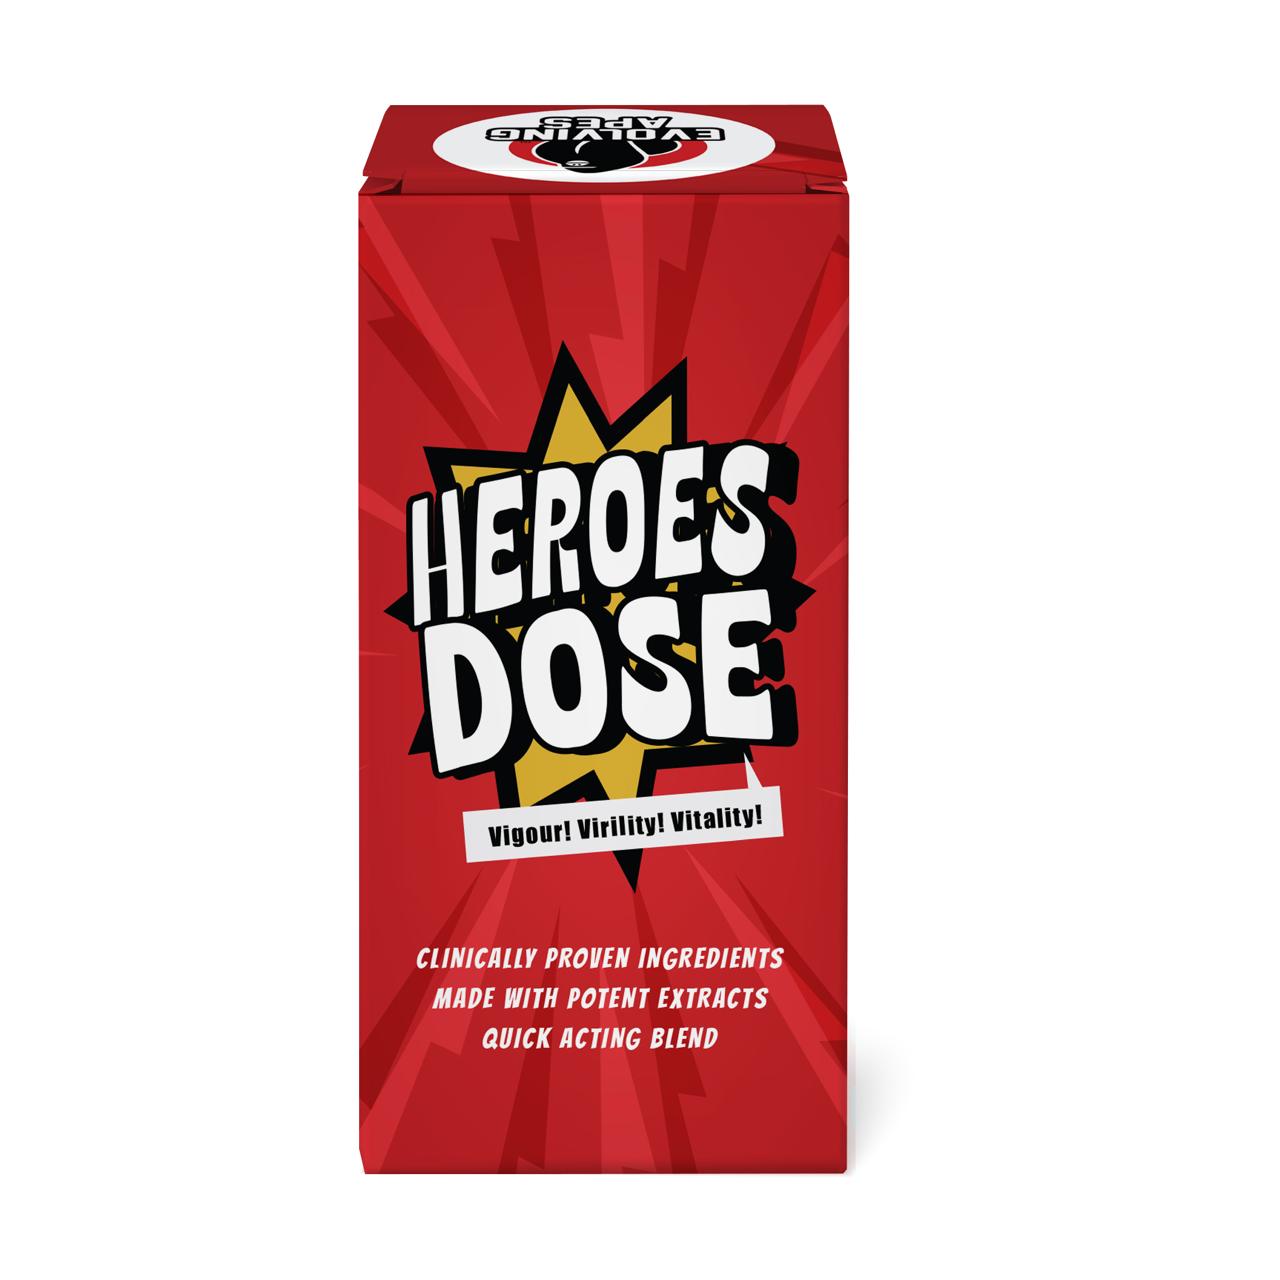 Heros dose